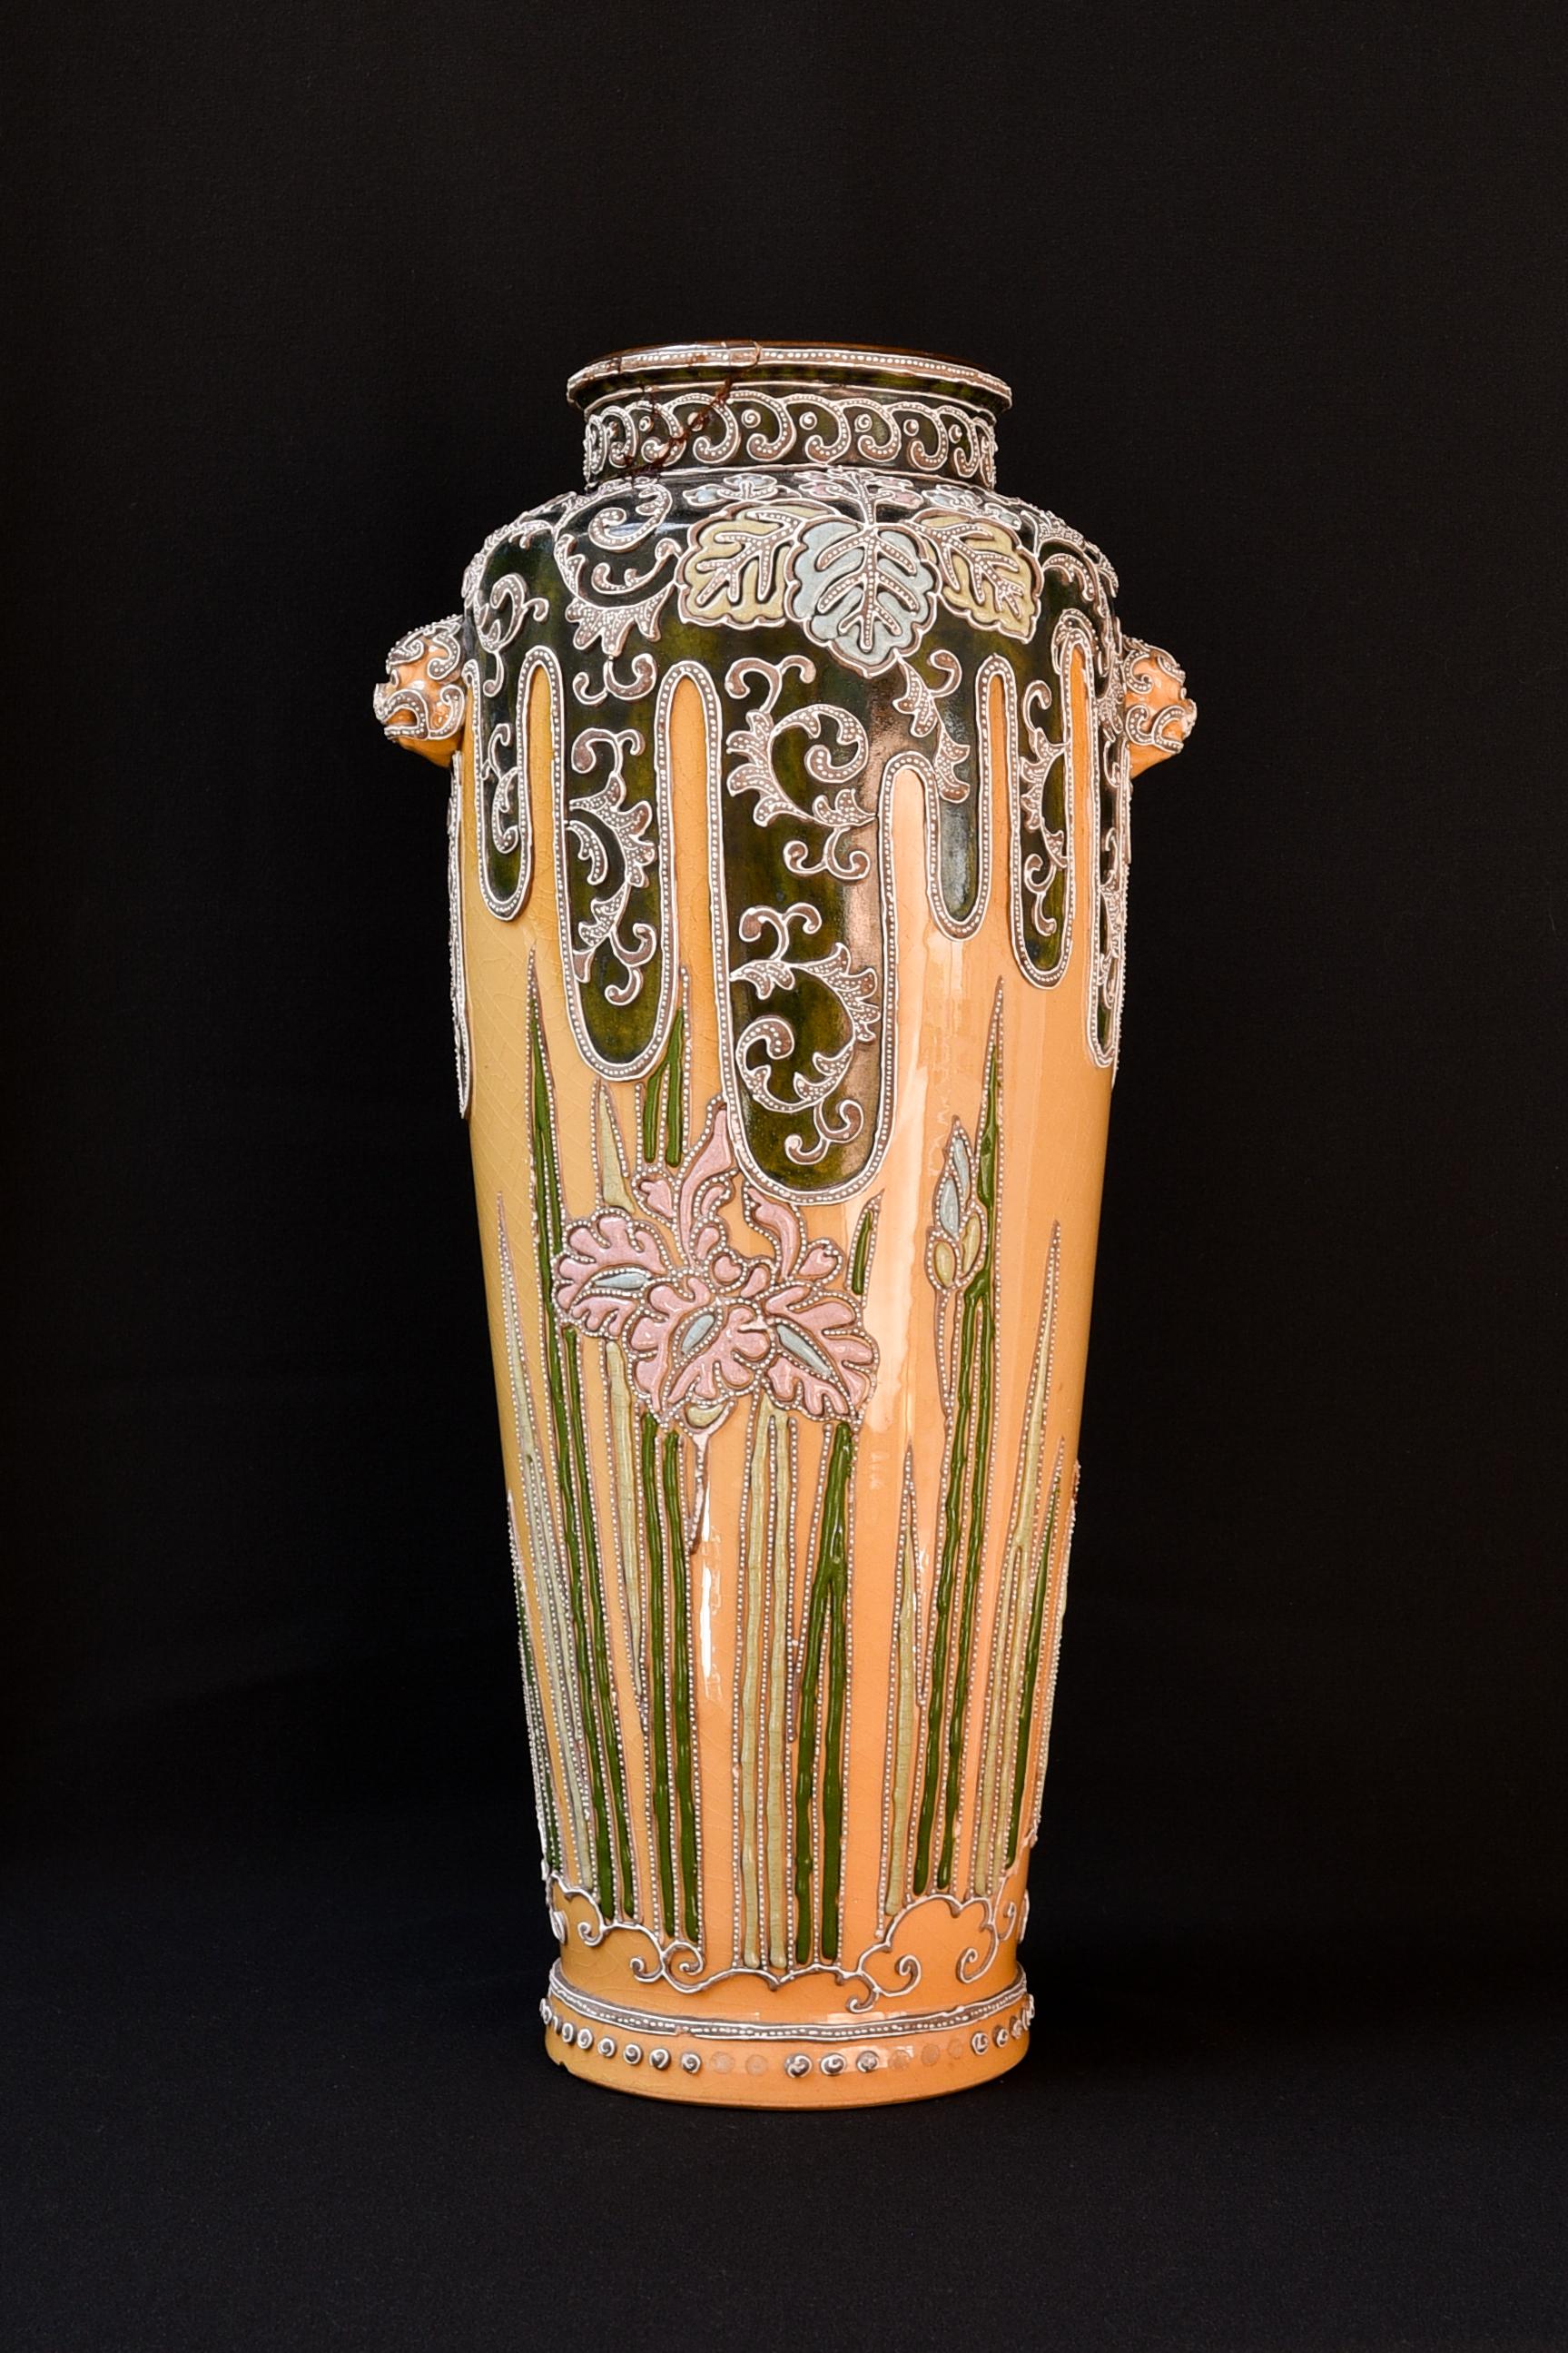 Sehr seltene japanische Vase mit schönen Details und japanischem Signaturstempel auf dem Boden. 
Der obere Teil ist beschädigt, wie man auf den Bildern sehen kann. Diese kann auf Wunsch von einem Expertenteam professionell restauriert werden (was